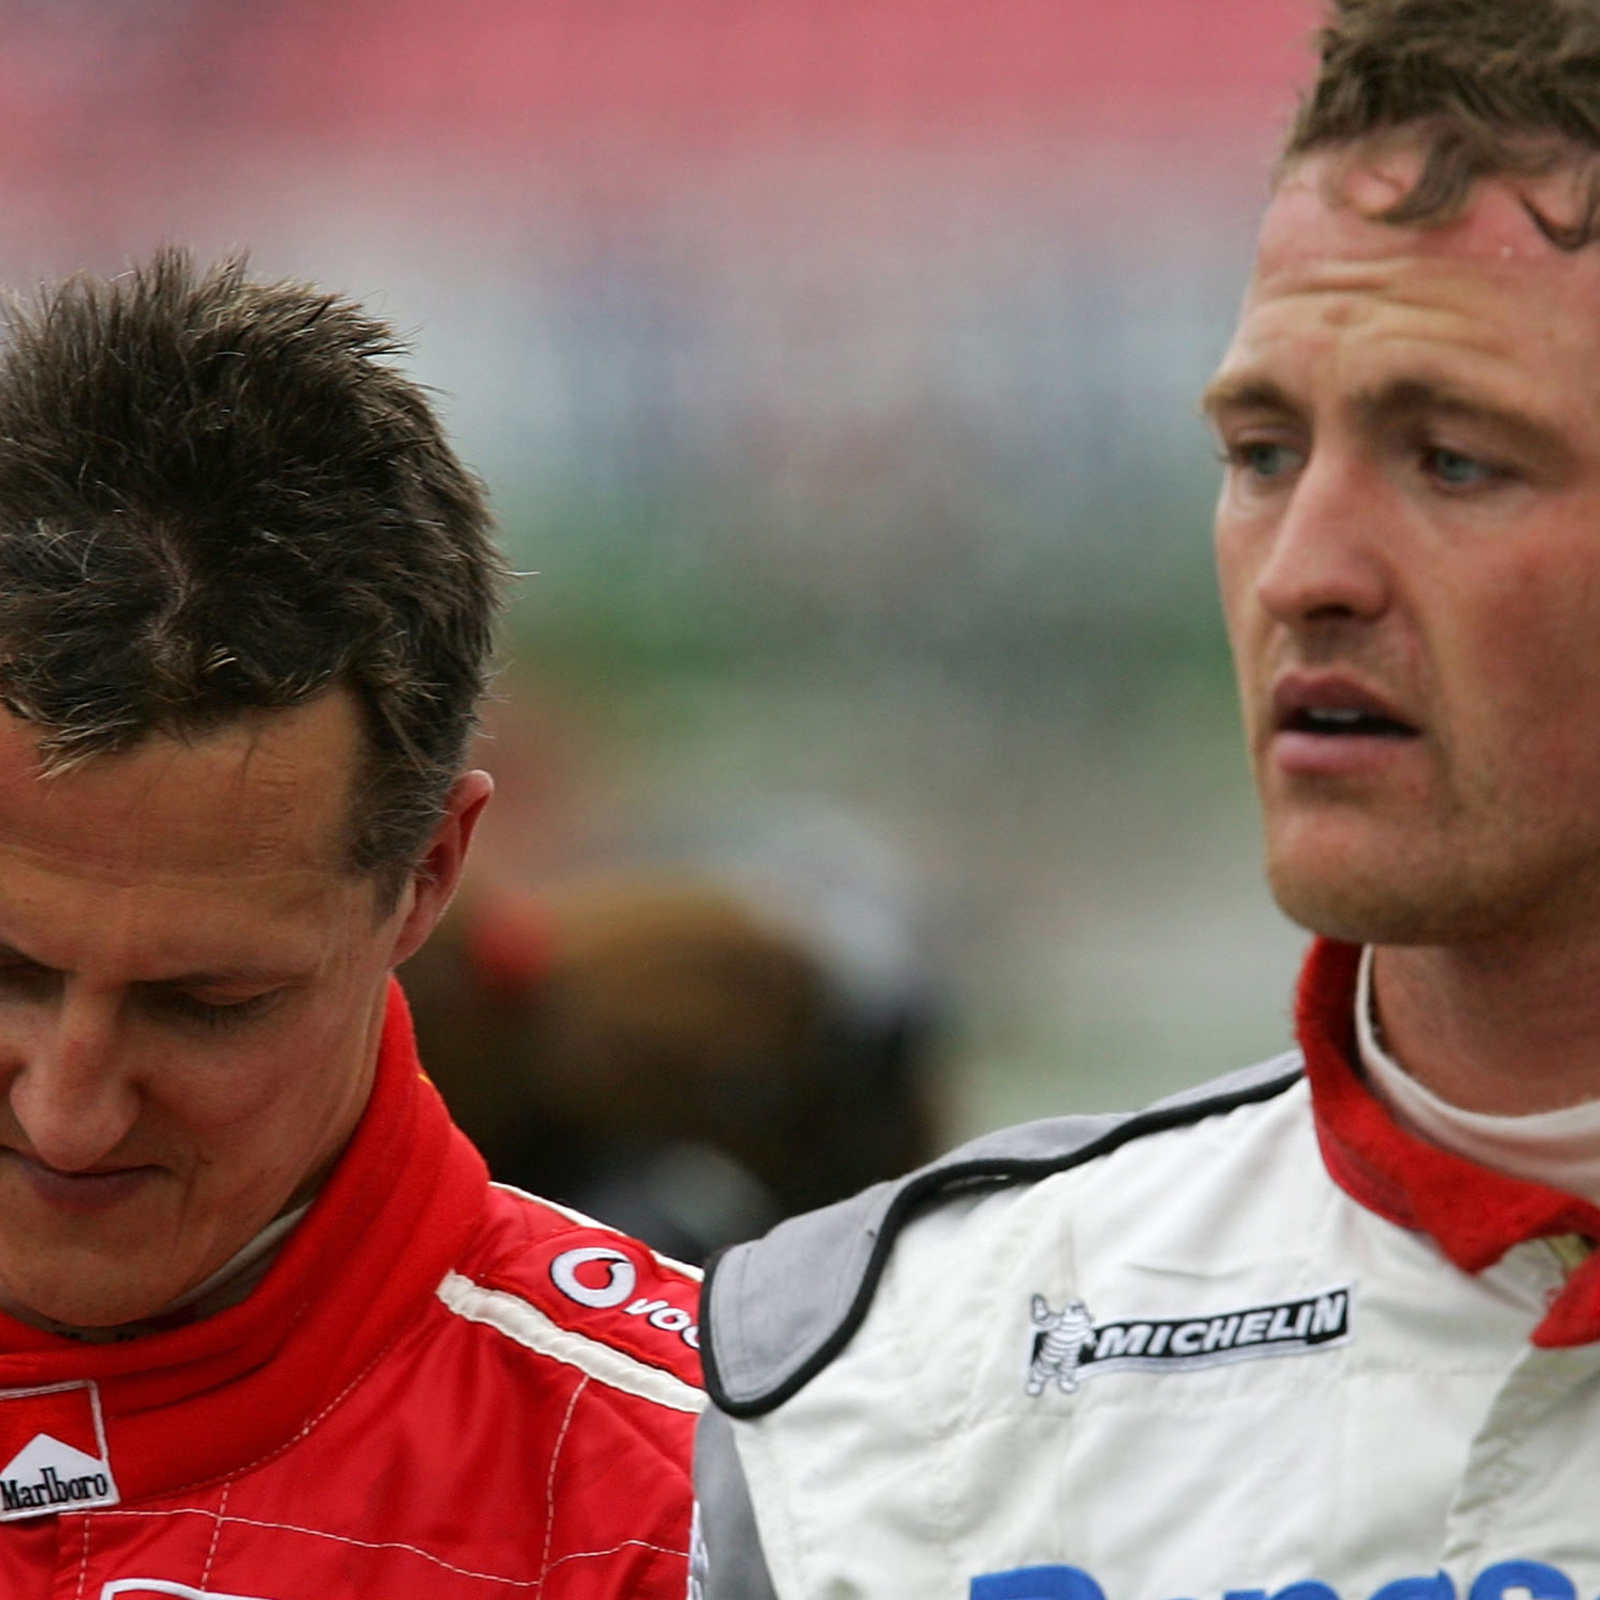 Ralf Schumacher vermisst den Michael von damals - sport24.at